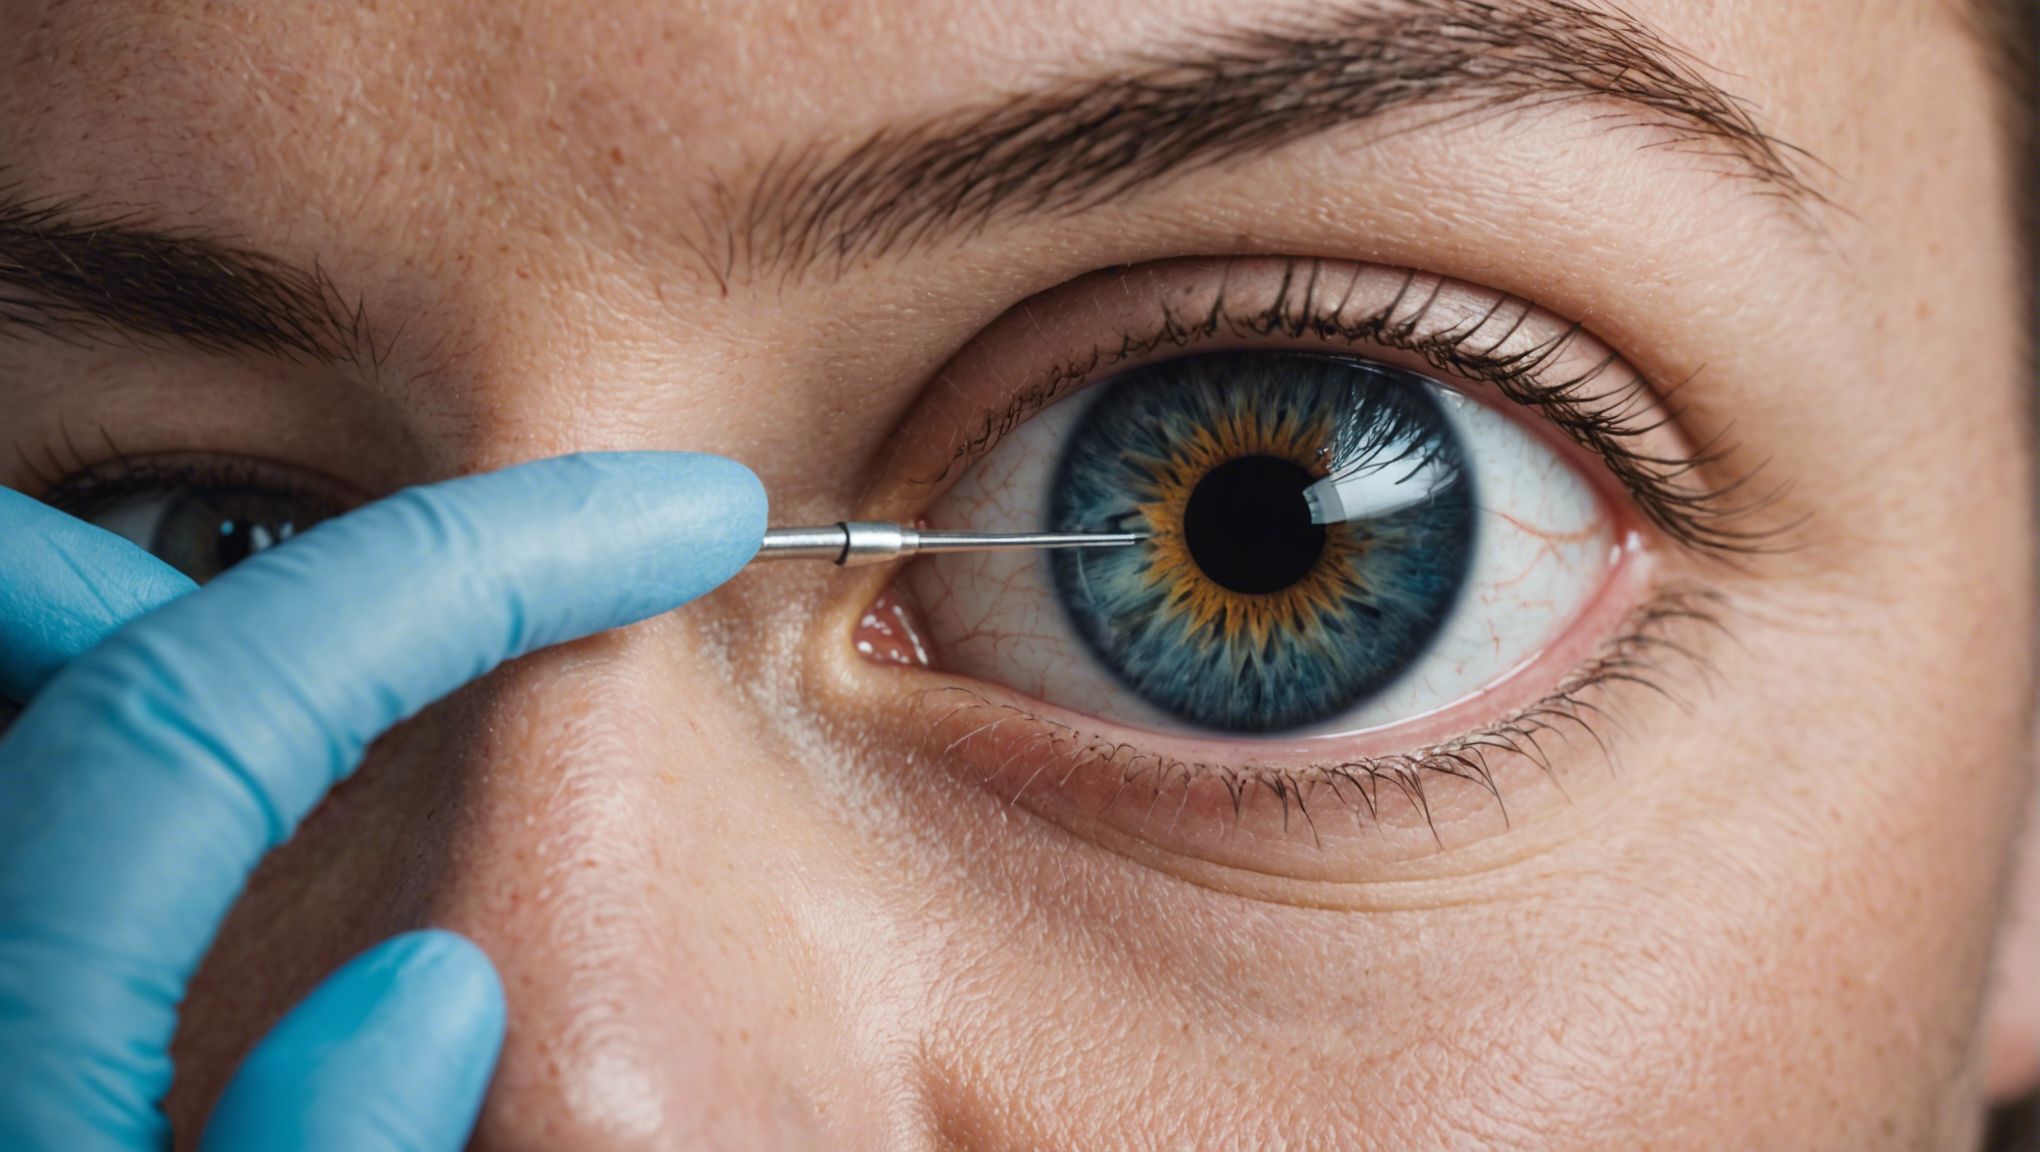 opération des yeux à dijon : découvrez une solution claire pour retrouver une vue parfaite avec notre expertise ophtalmologique.